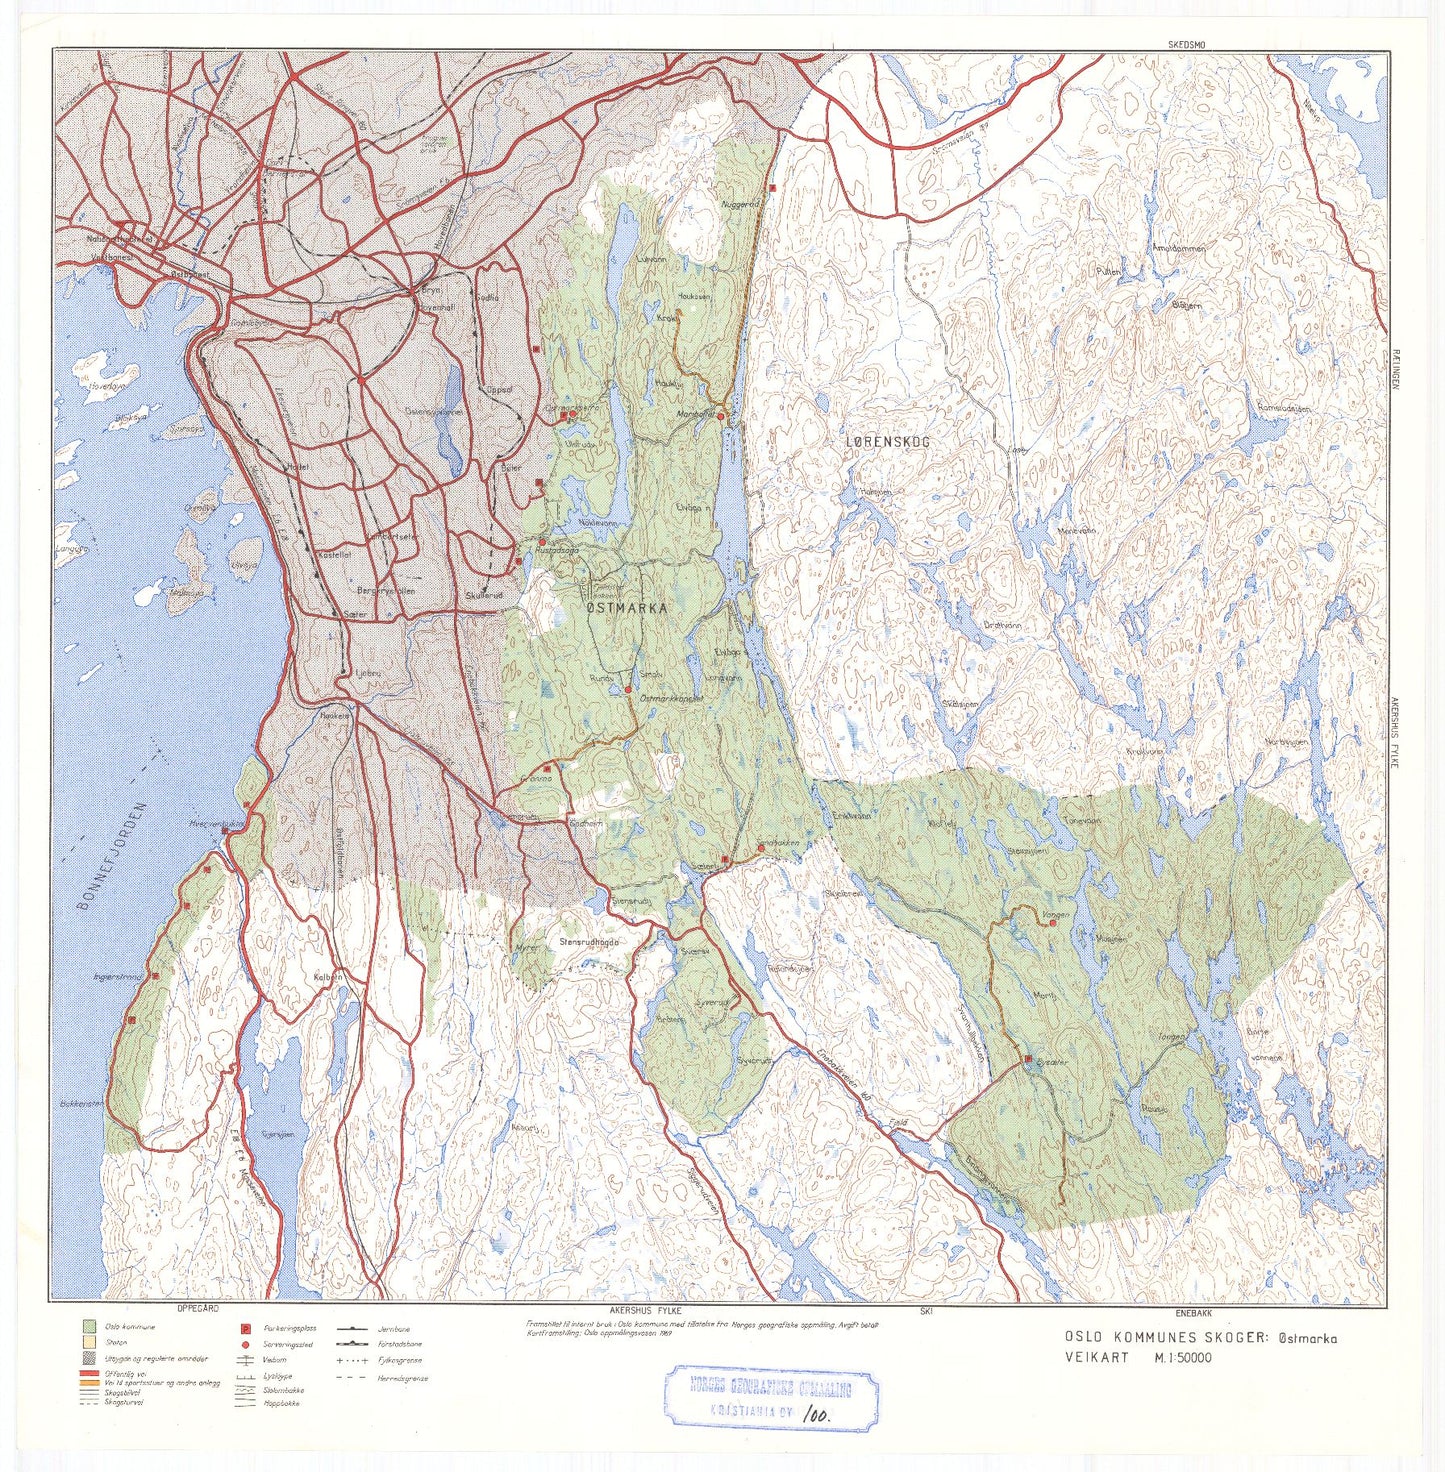 Kristiania amt nr 100: Oslo kommunes skoger (veikart): Oslo